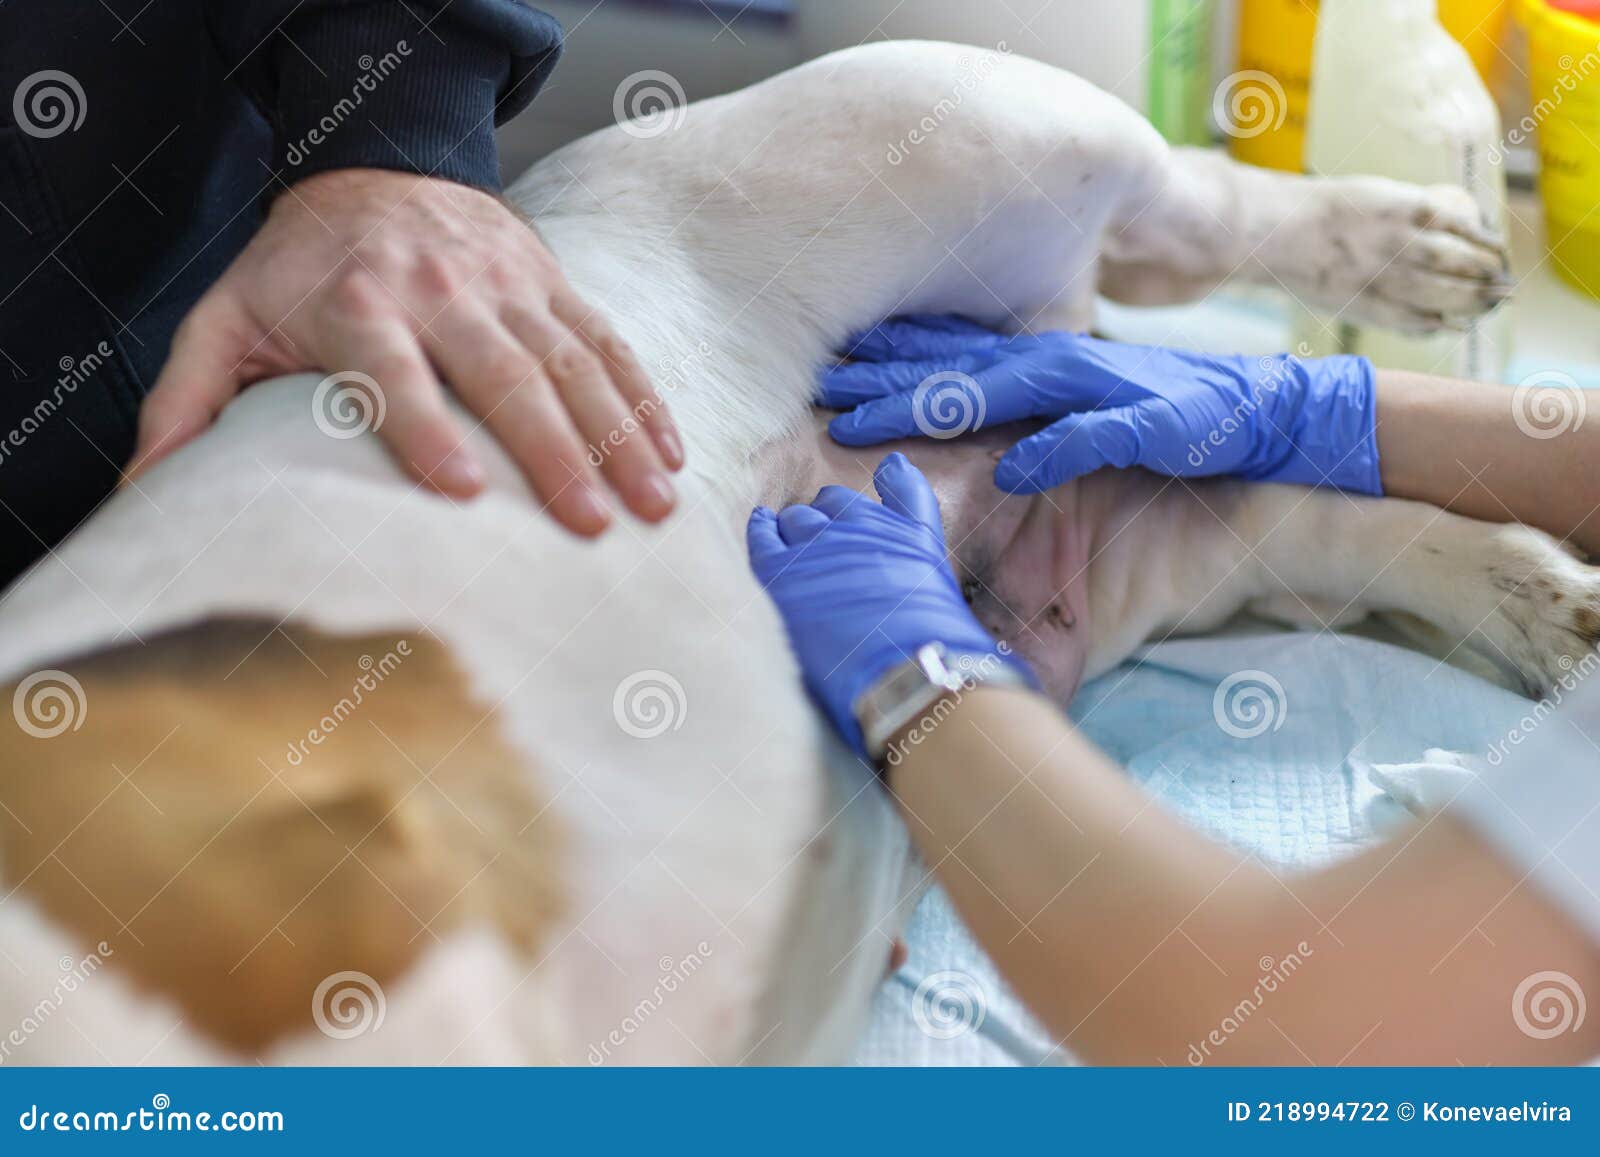 Шарик после операции собачье